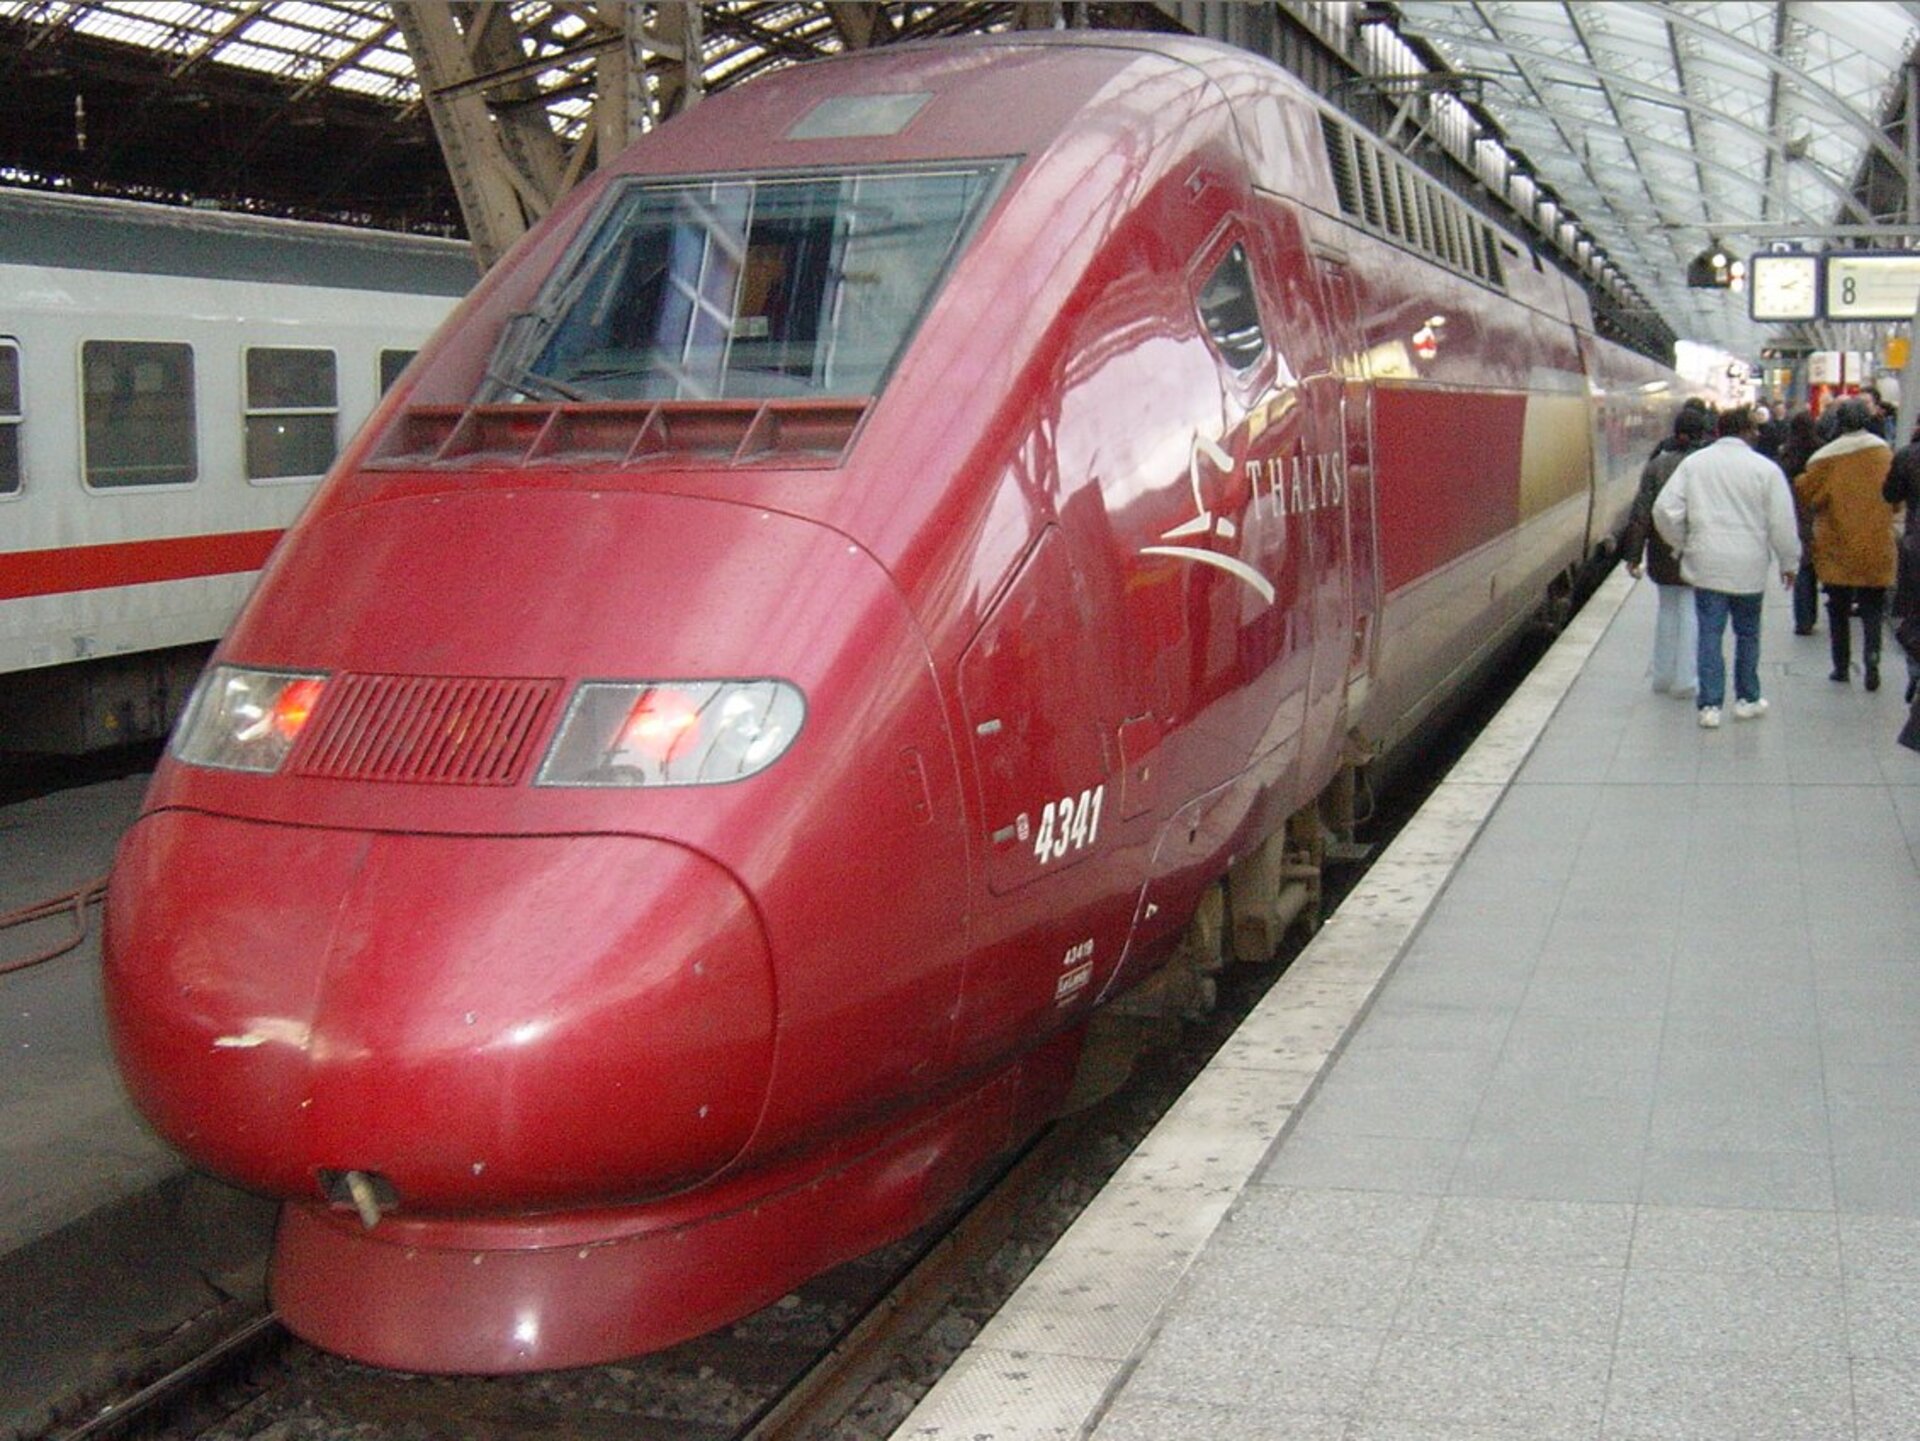 Internetten is nu mogelijk voor reizigers aan boord van Thalys